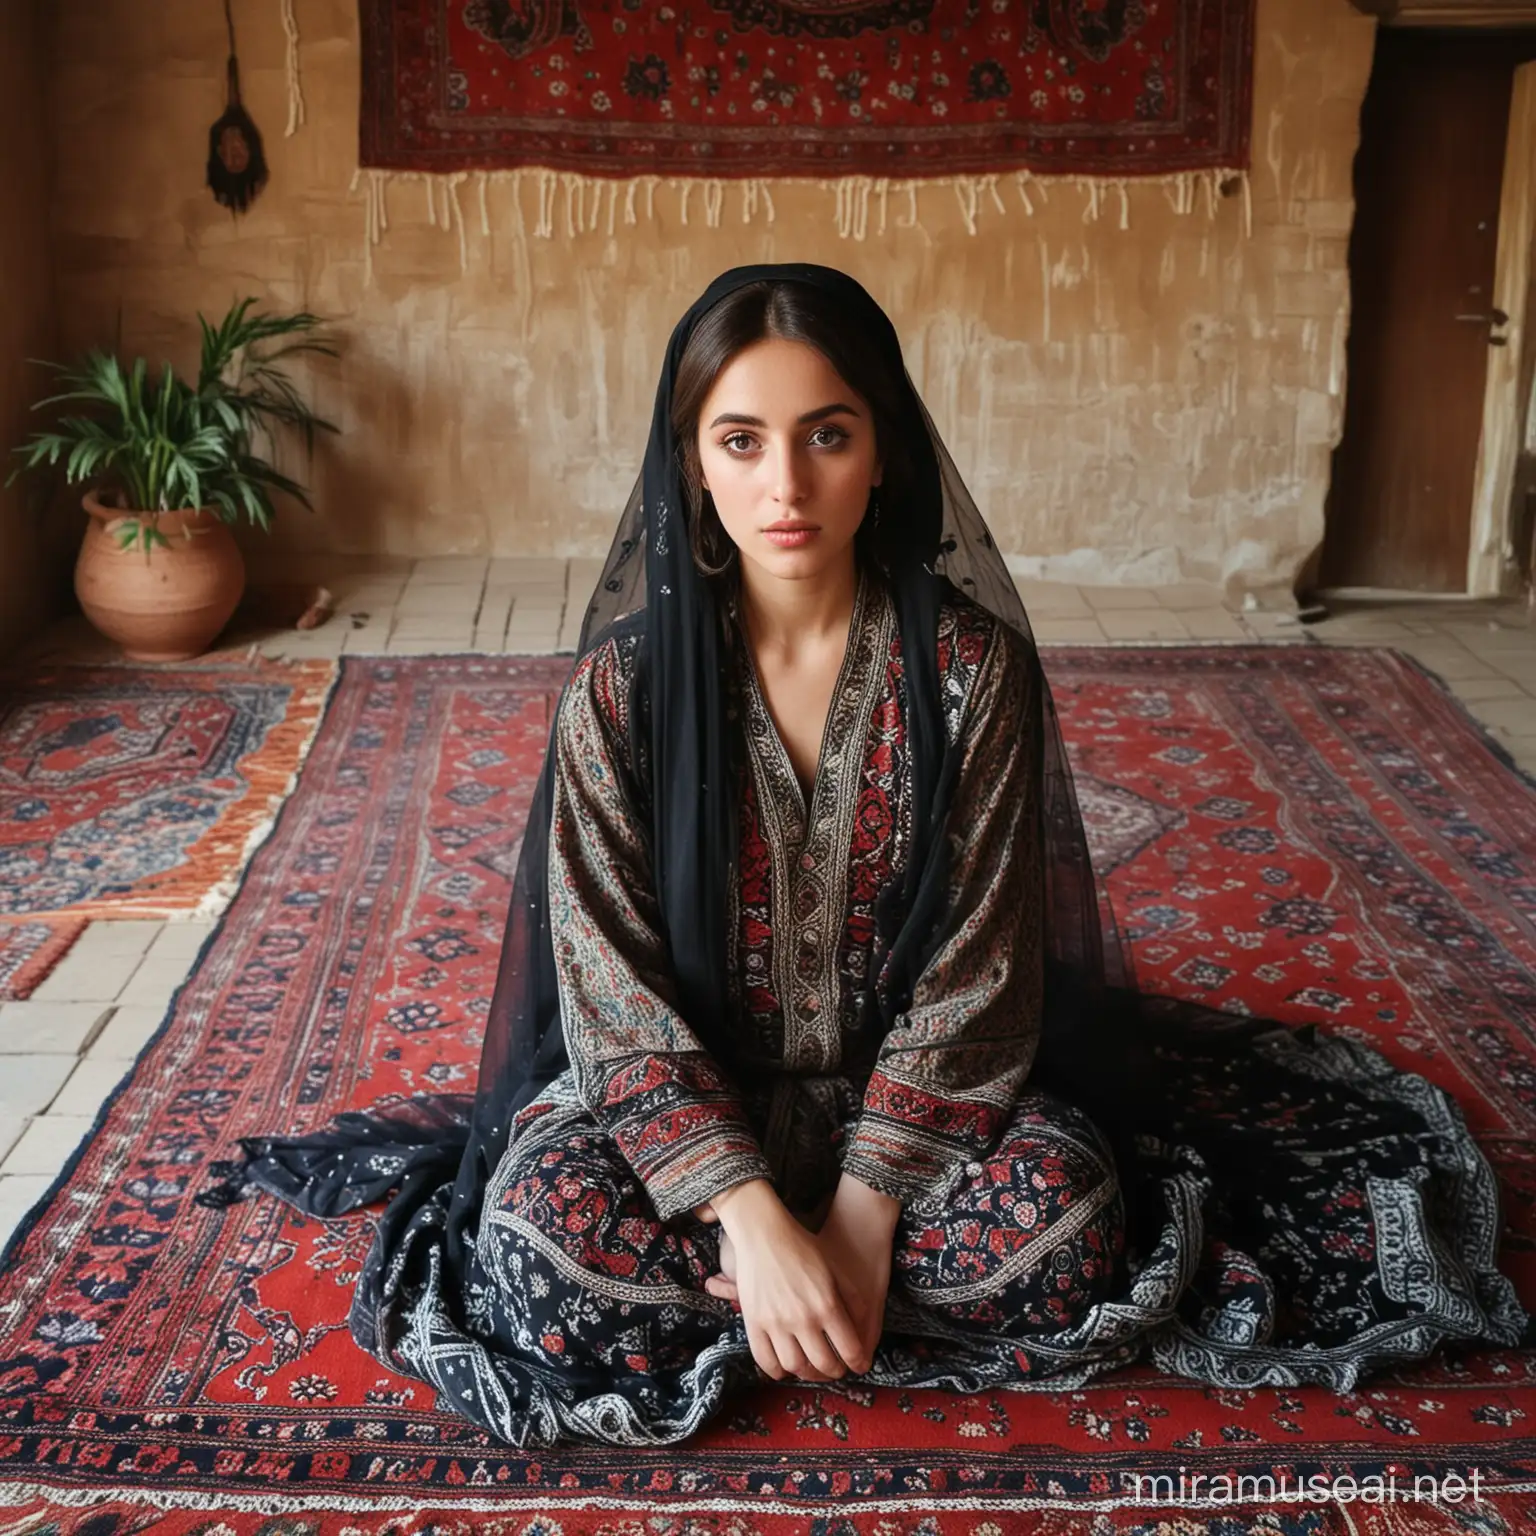 یک دختر زیبای حجابی با چشم‌های سیاه و بزرگ، و لب سکسی لباس کش دارد و در خانه قالین دار افغانی نشسته است، تصویر طوری باشد که همه چه طبیعی به نظر آید